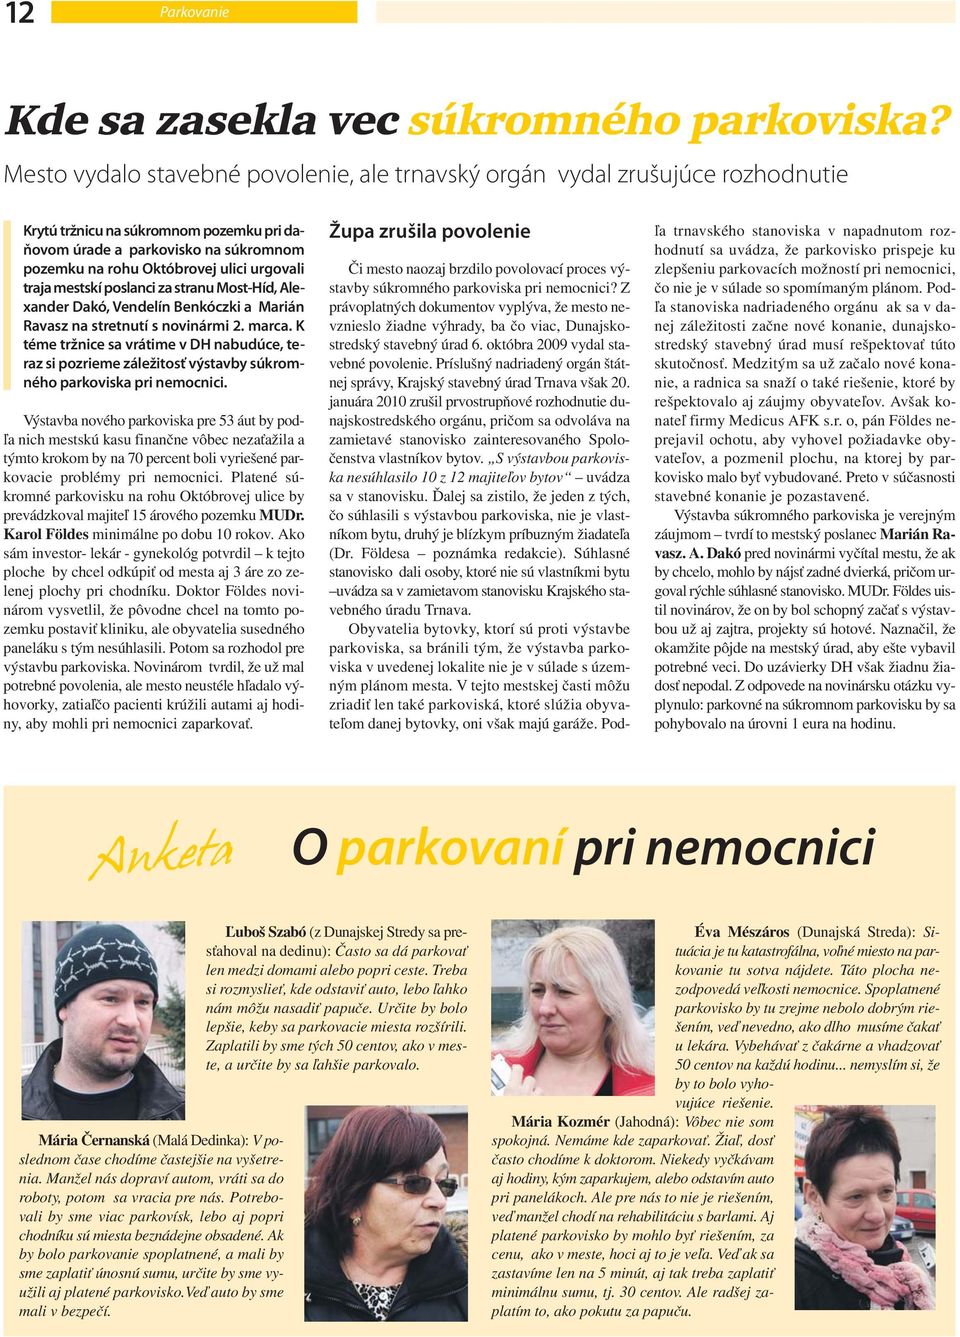 urgovali traja mestskí poslanci za stranu Most-Híd, Alexander Dakó, Vendelín Benkóczki a Marián Ravasz na stretnutí s novinármi 2. marca.